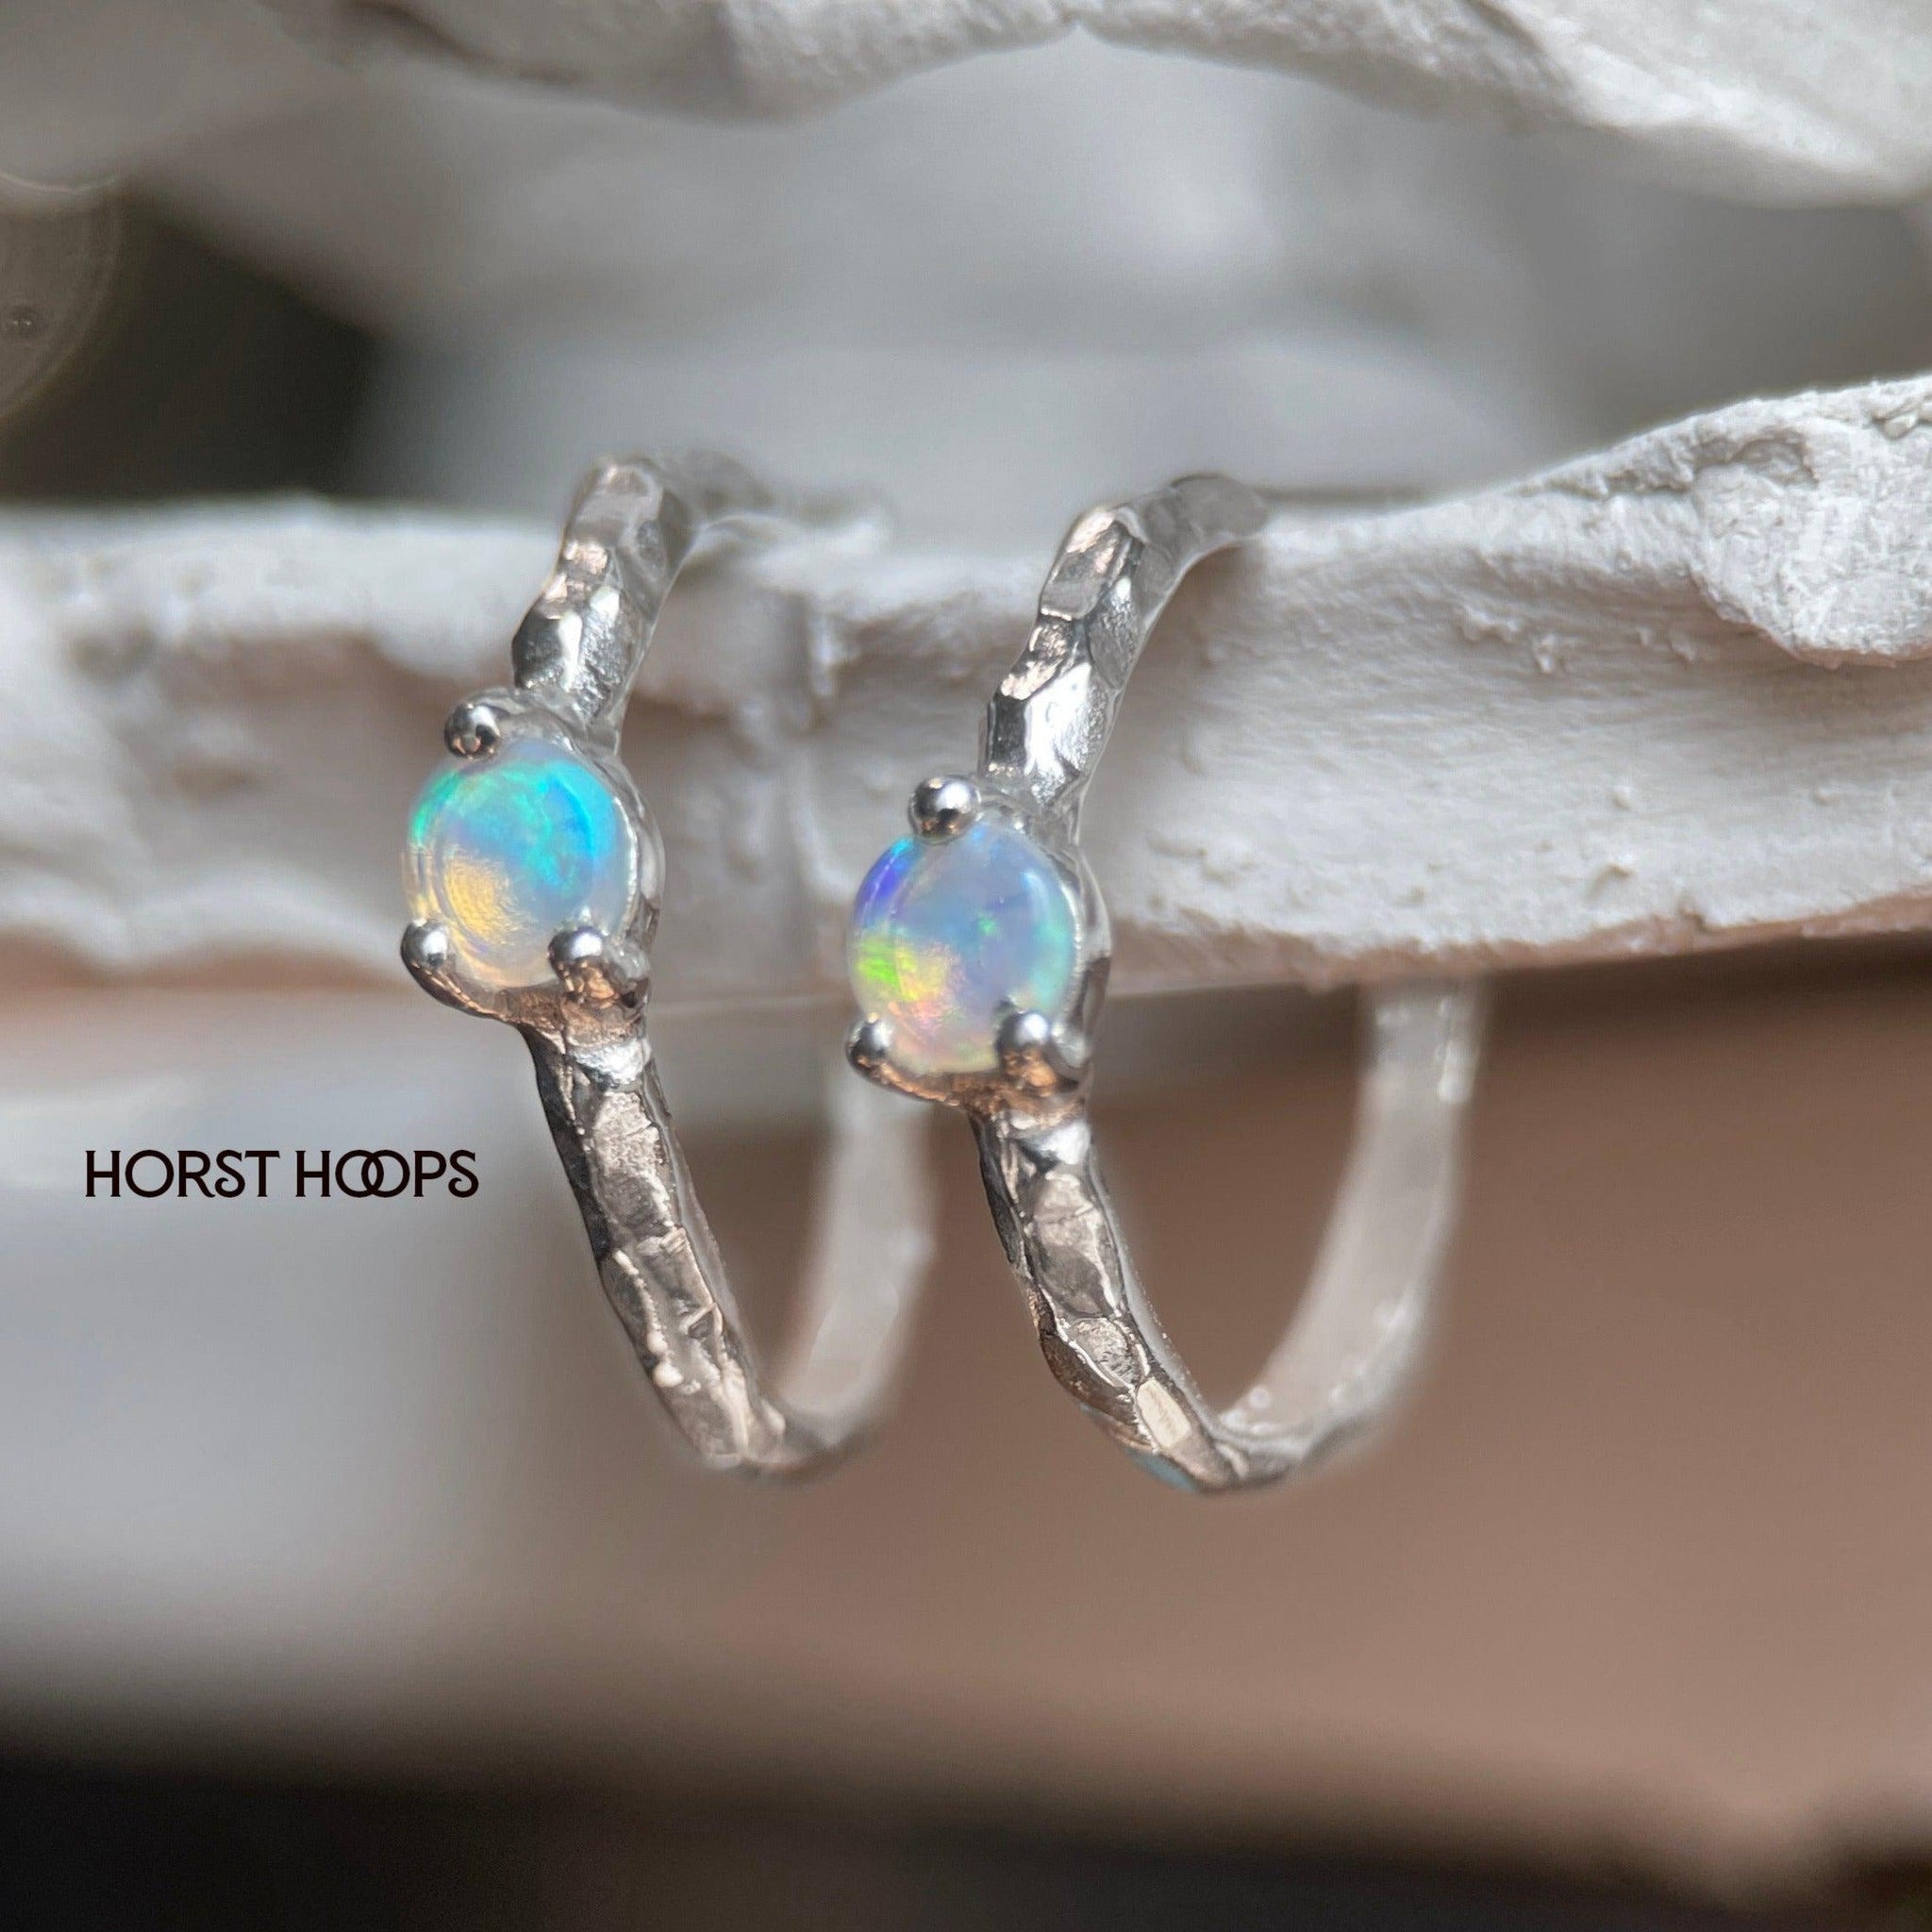 HORST HOOPS VII OPALS-Earrings-Corkysaintclair Melbourne